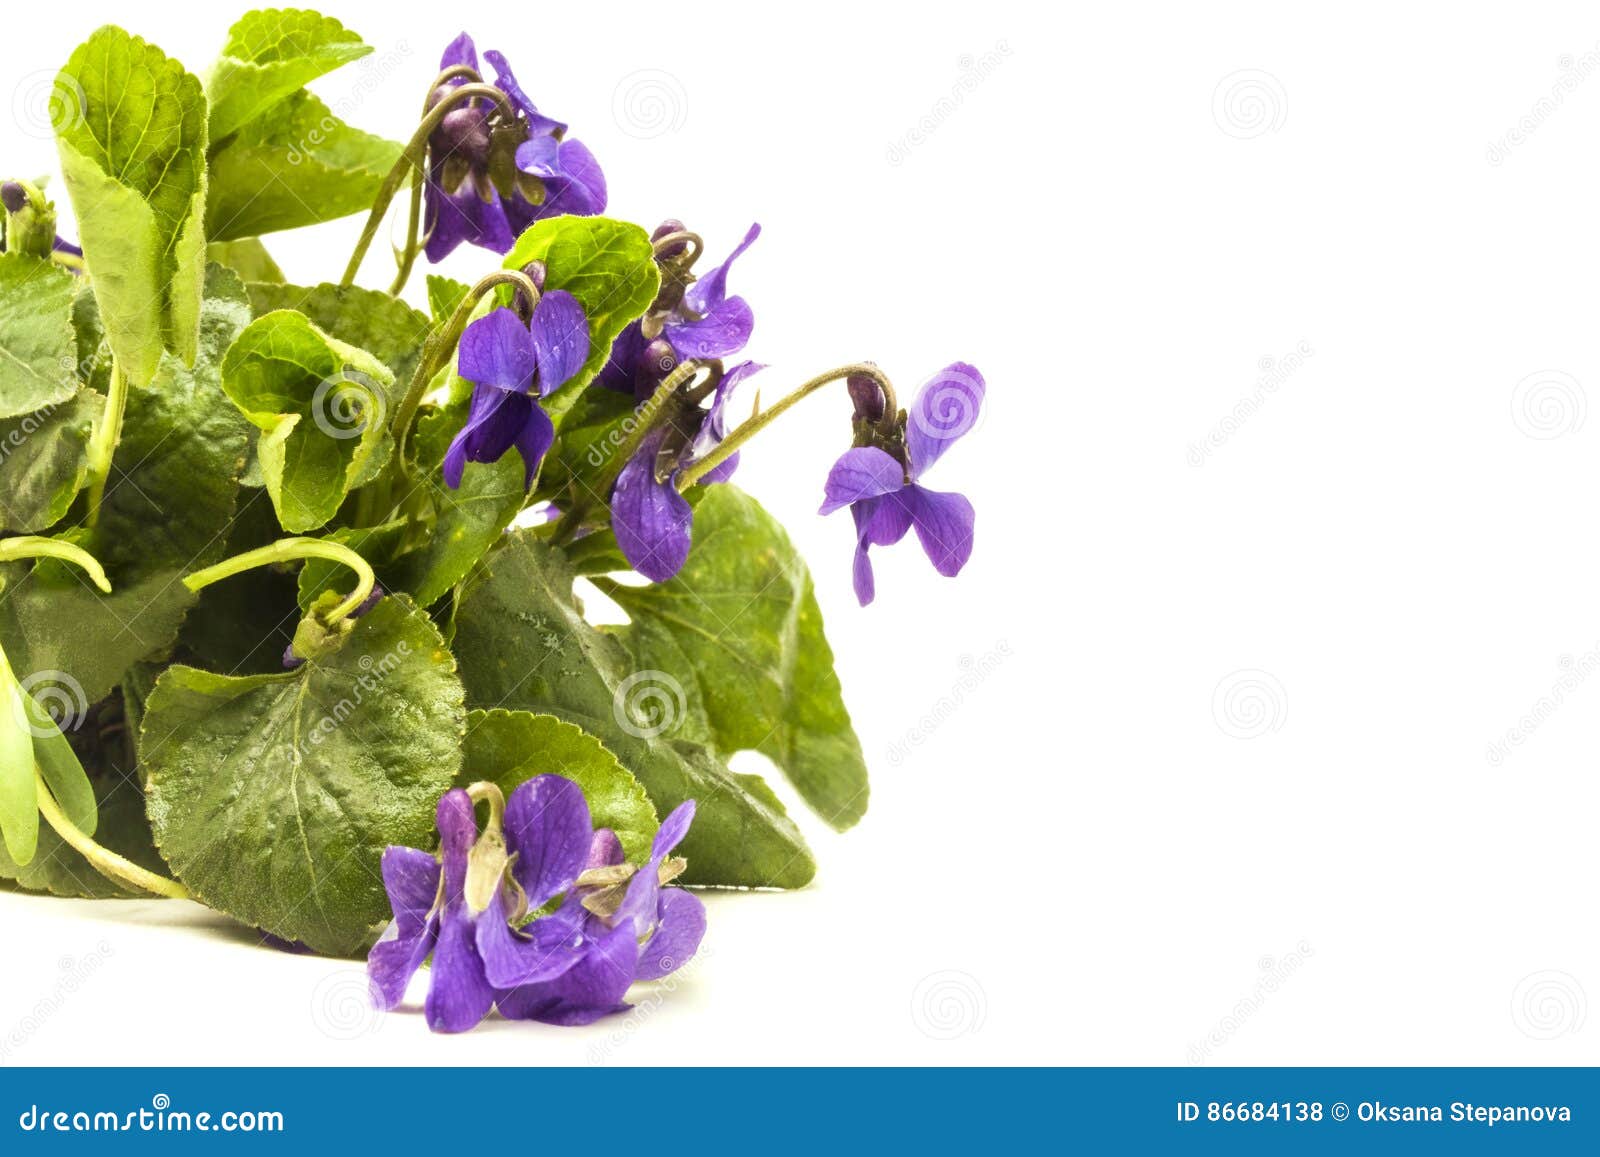 紫罗兰色新鲜的兰花 库存图片. 图片 包括有 特写镜头, 绿色, 抽象, 植物群, 艺术, 本质, 颜色 - 15704965